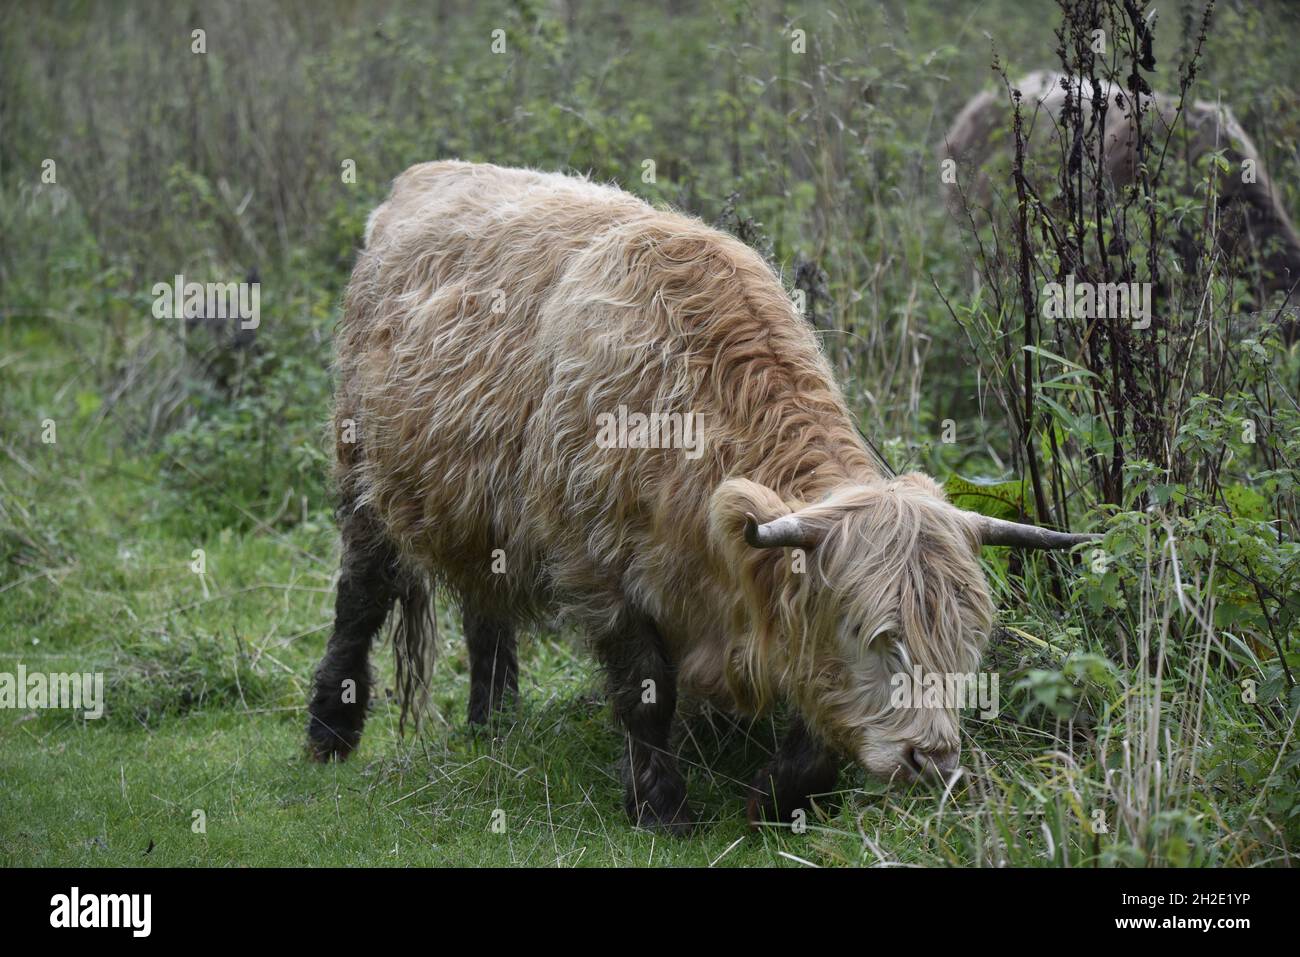 Ganzkörperbild von Highland-Rindern, die im Oktober in einem Naturschutzgebiet in Staffordshire, Großbritannien, grasen Stockfoto